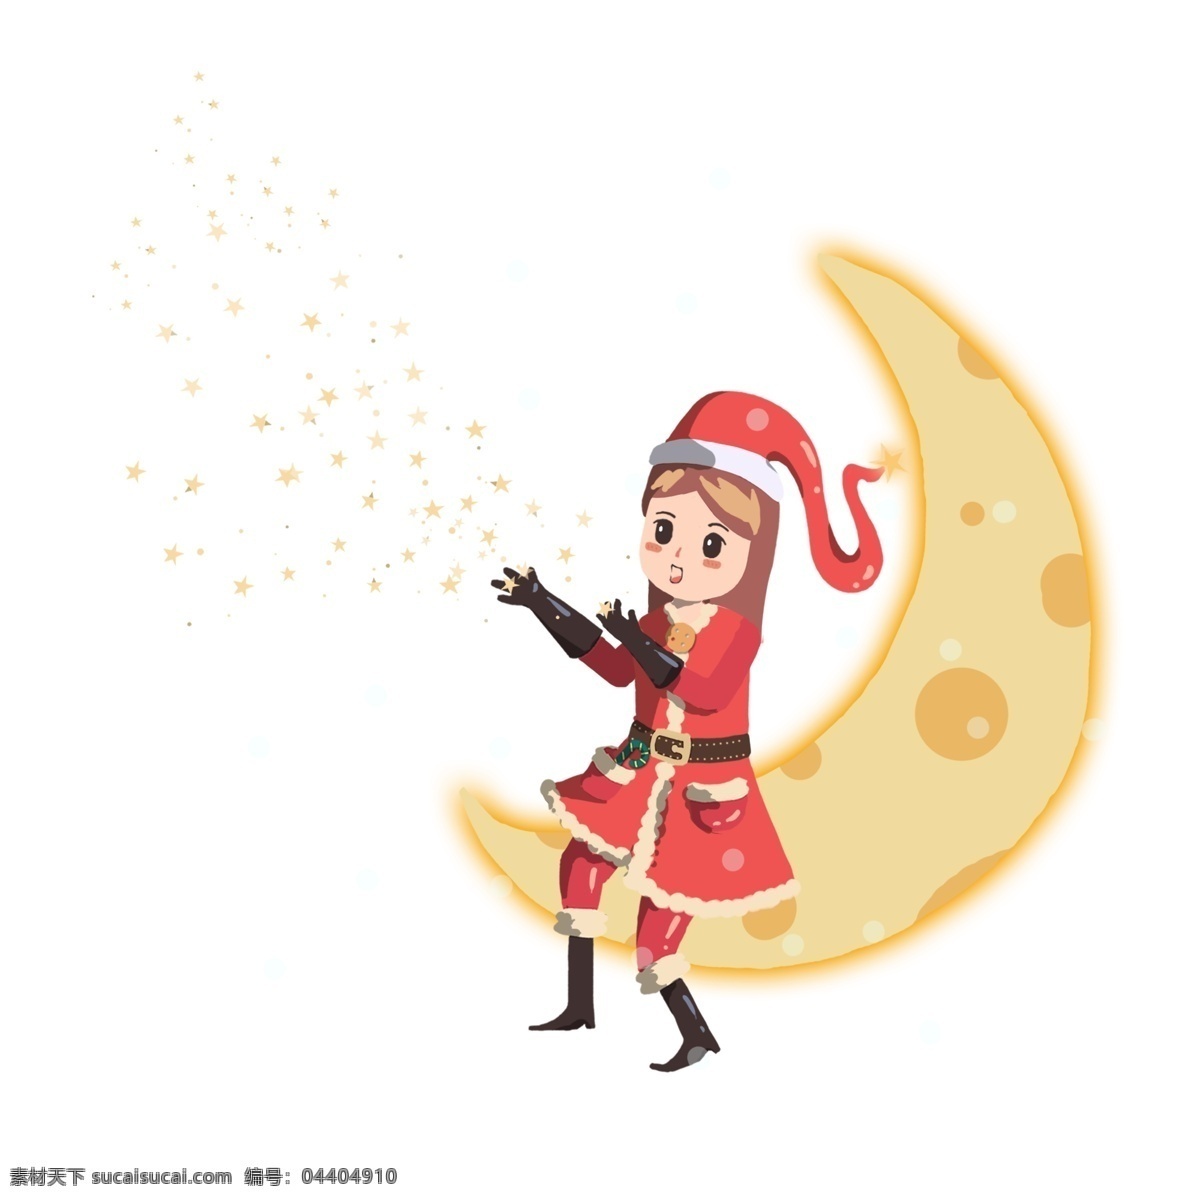 圣诞节 里 小女 孩儿 坐在 月亮 上 圣诞小姐姐 月牙弯弯 星光闪闪 法术 红色 圣诞衣 圣诞帽子 靴子 手套 祝福 卡通 手绘